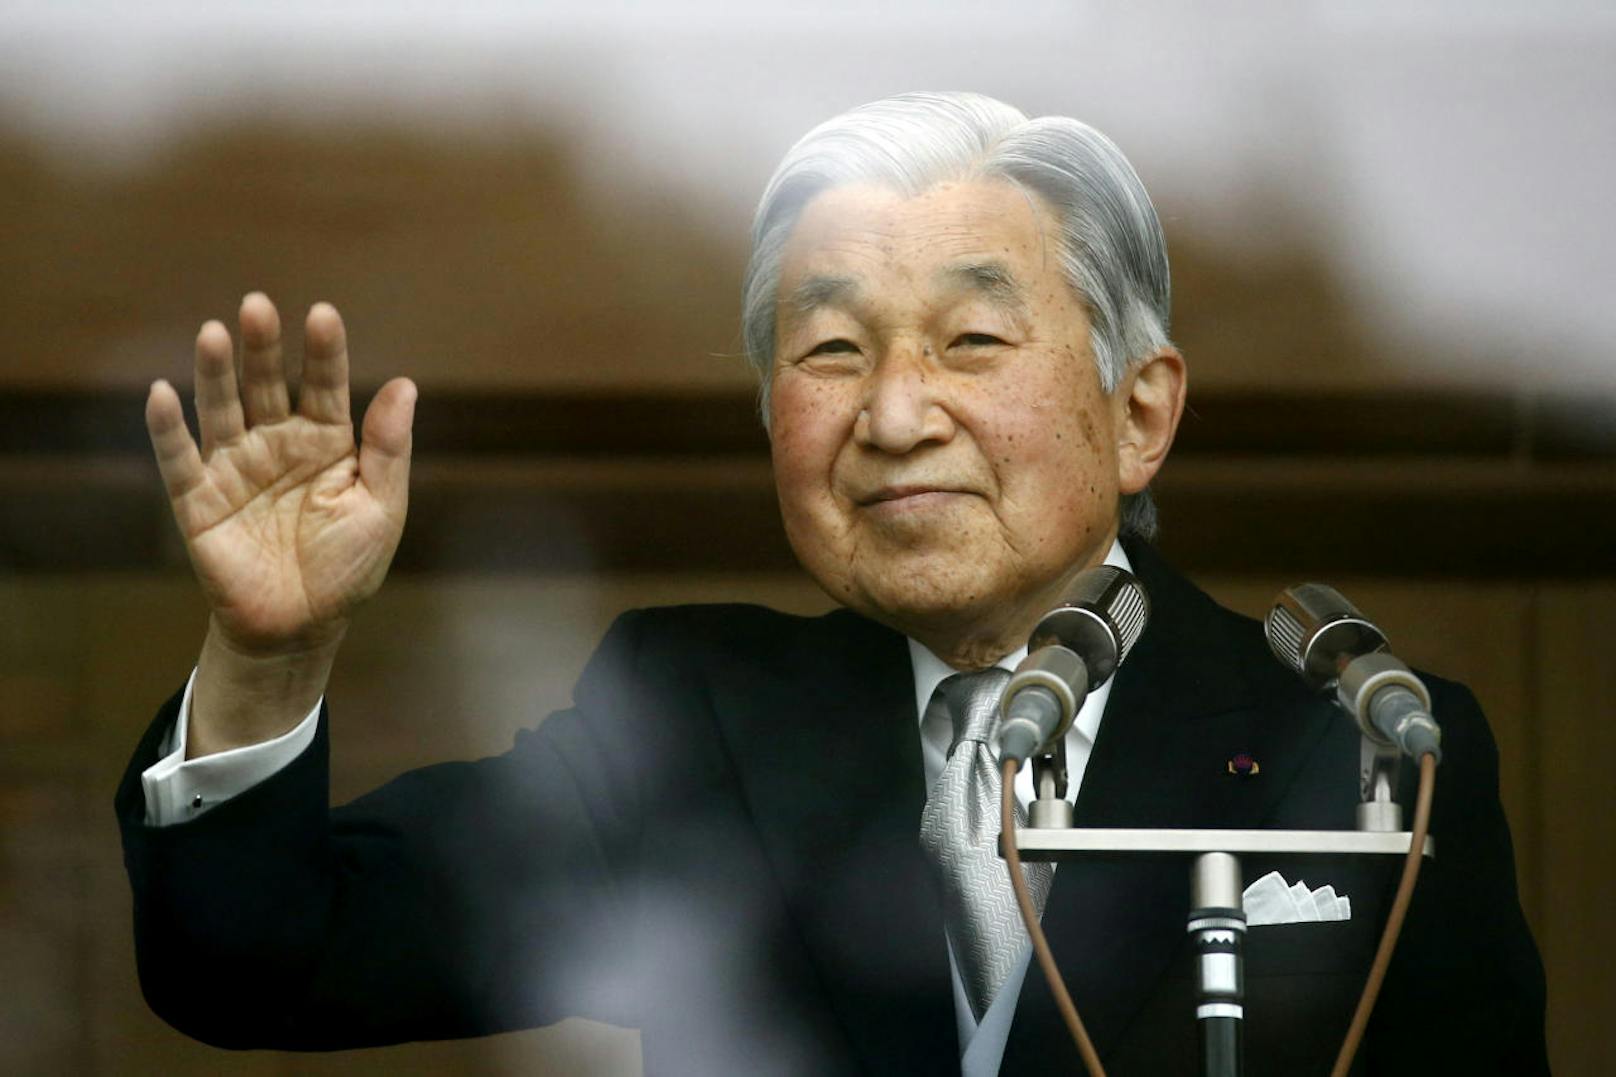 Japans Kaiser Akihito bestieg am 7. Januar 1989 im Alter von 55 Jahren den japanischen Chrysanthementhron und wurde am 12. November 1990 offiziell zum 125. Tenno von Japan ausgerufen. Akihito hat seiner Regierungszeit den Namen Heisei ("Frieden überall") gegeben.